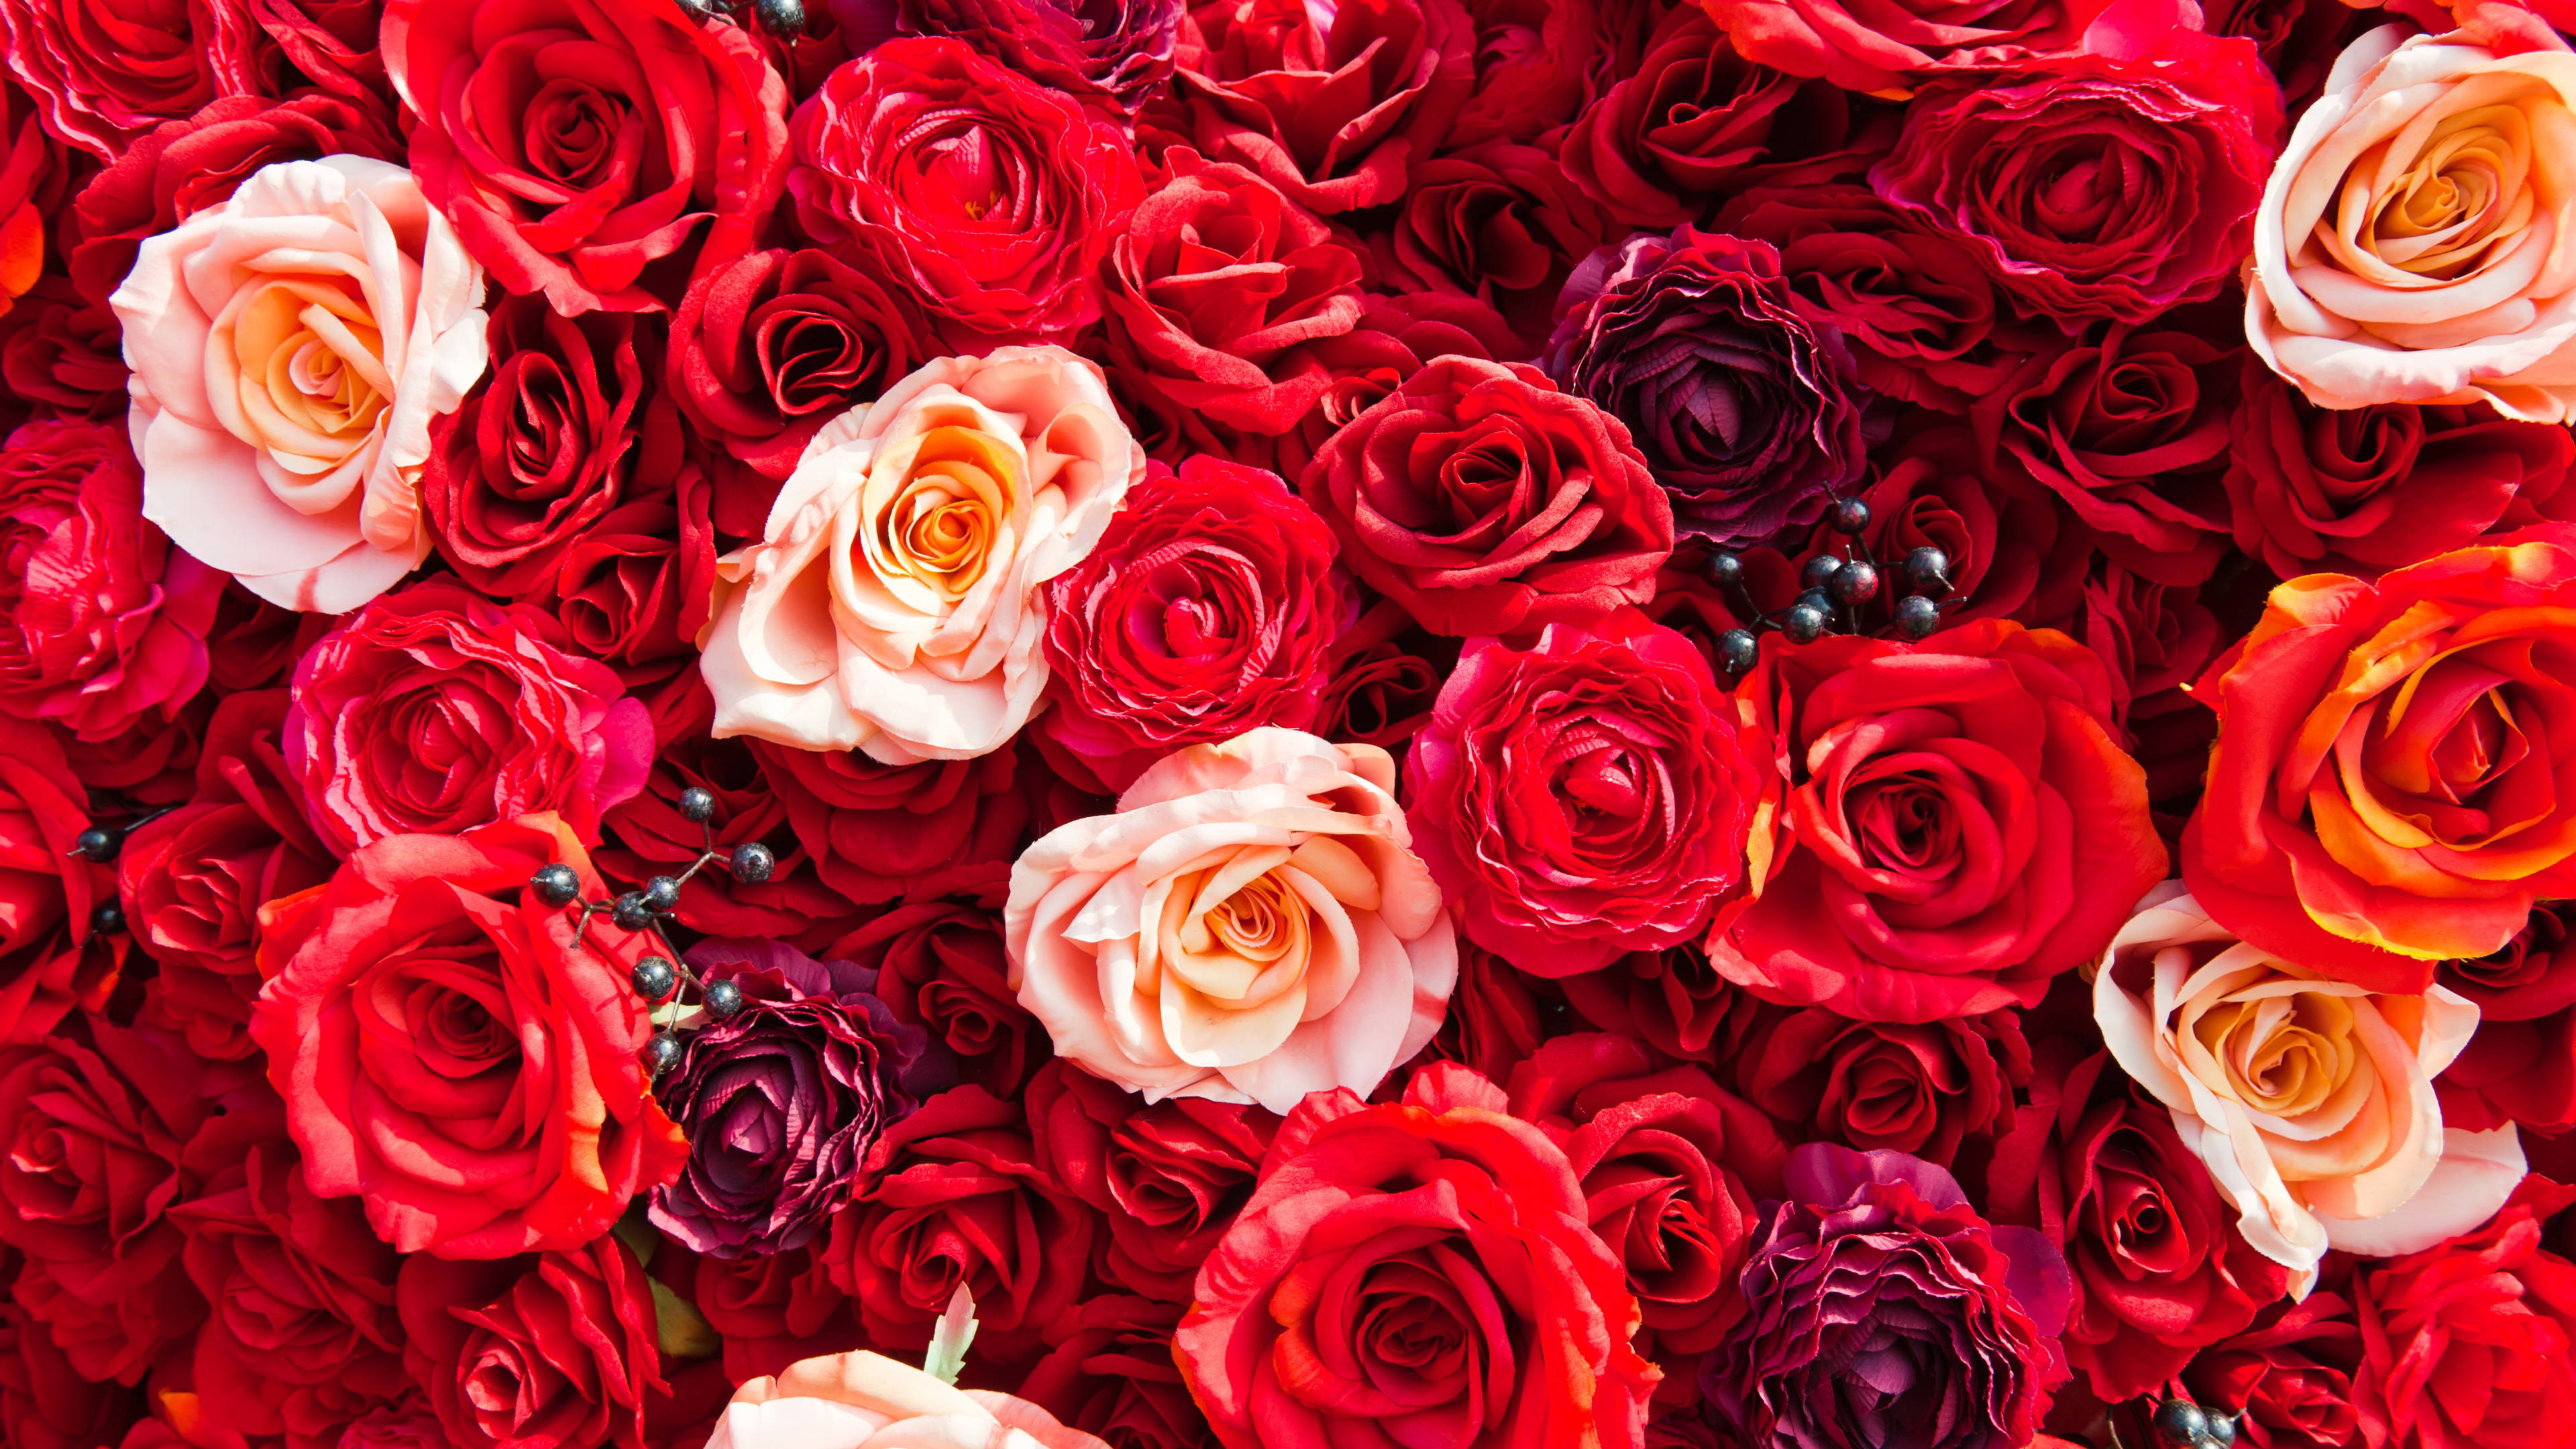 Обои сад роз, Роза, цветок, красный цвет, семья Роуз в разрешении 3840x2160